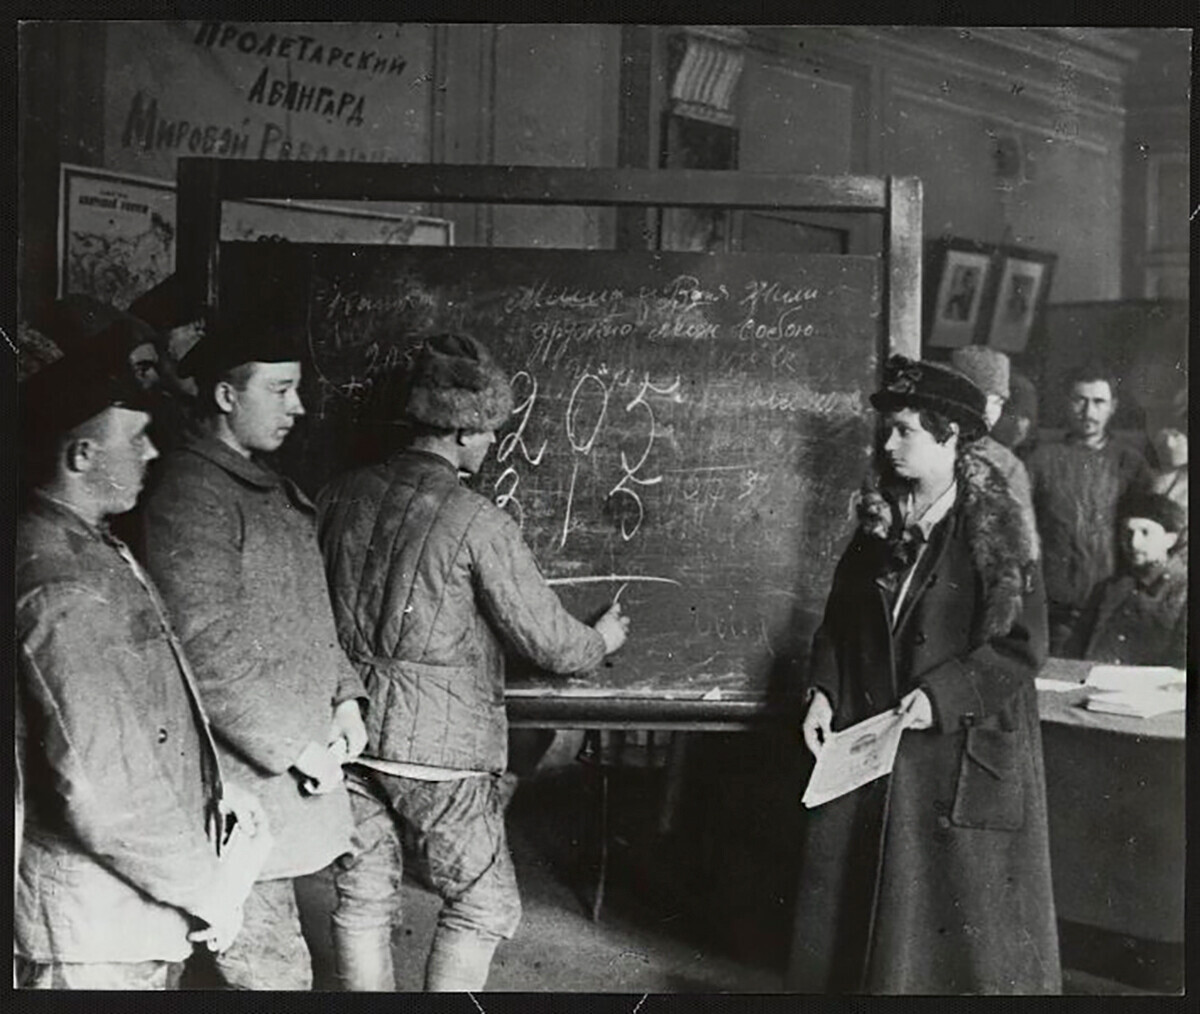 Aulas para eliminar o analfabetismo em Petrogrado, 1920.
